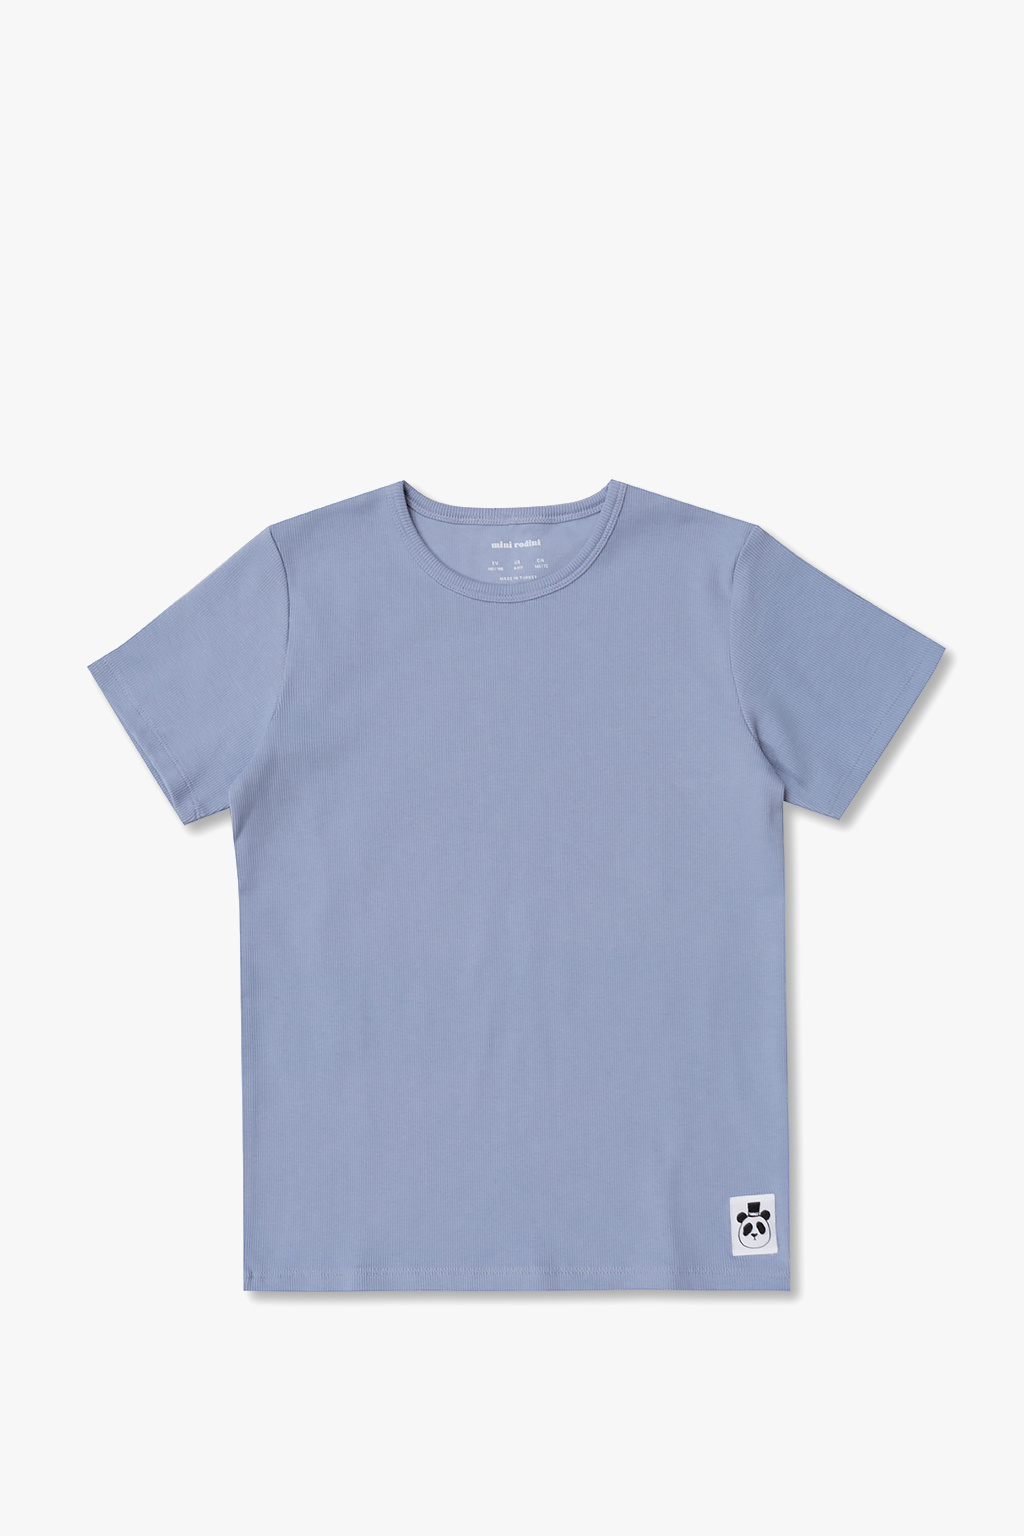 Mini Rodini Cotton T-shirt